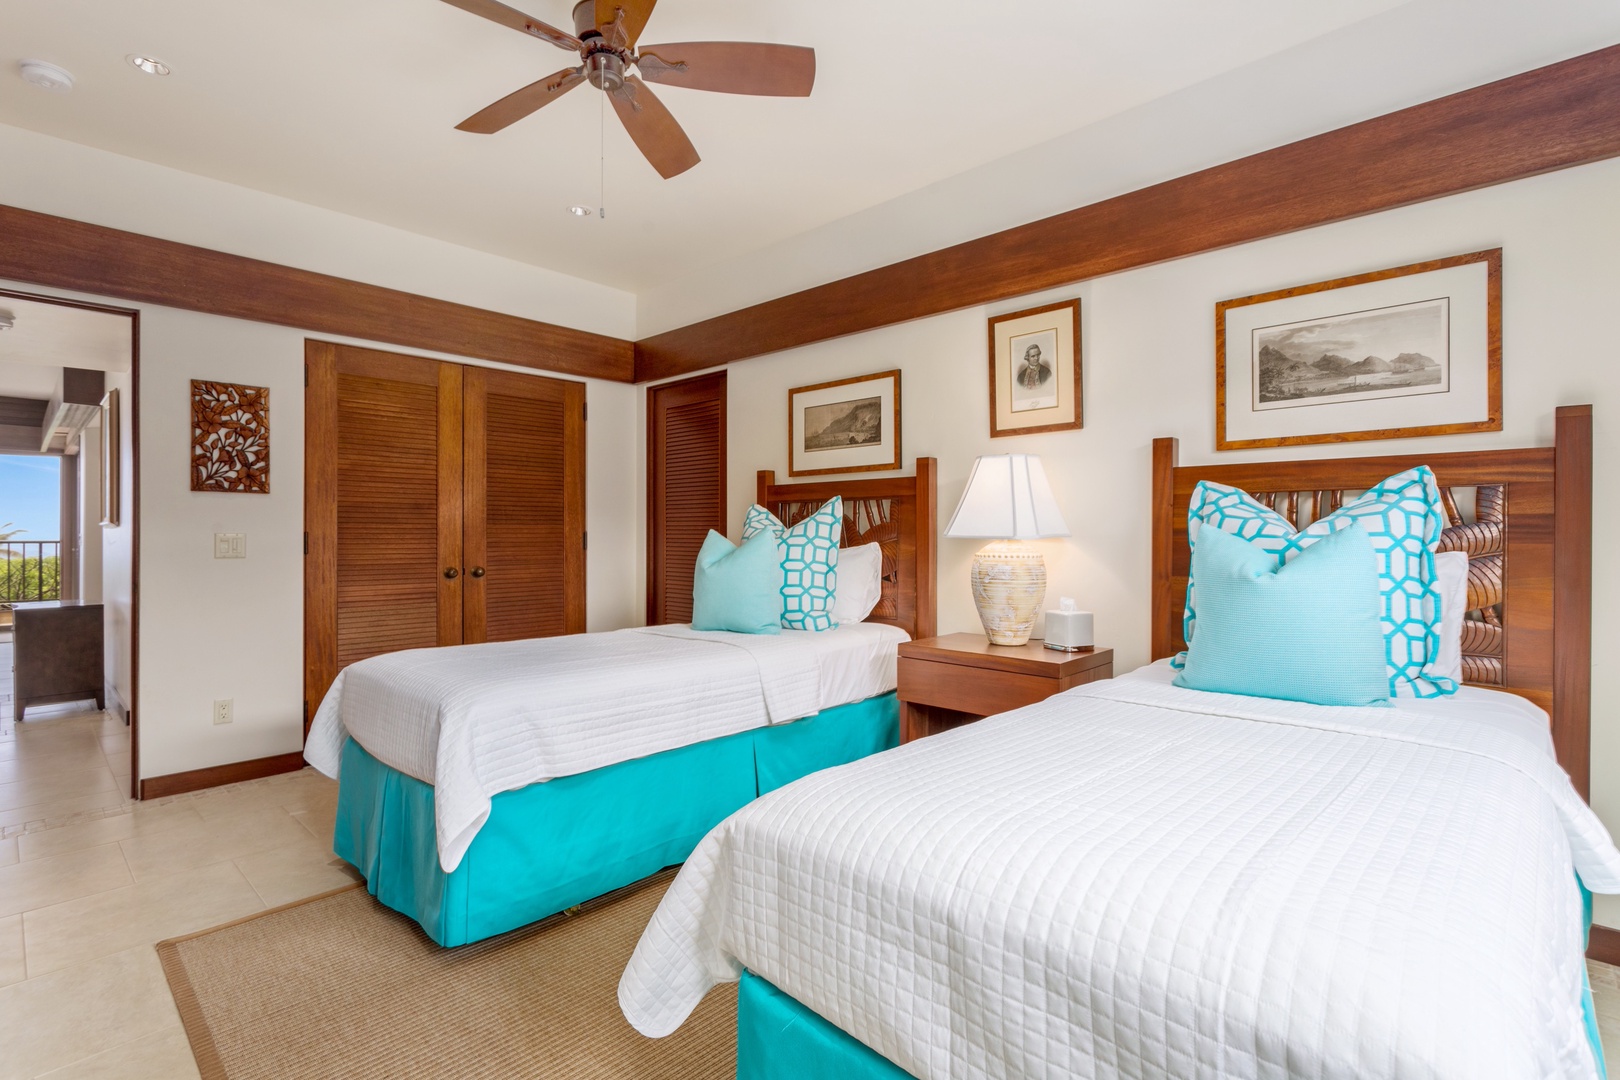 Kamuela Vacation Rentals, OFB 3BD Villas (39) at Mauna Kea Resort - Alternate view of third bedroom.